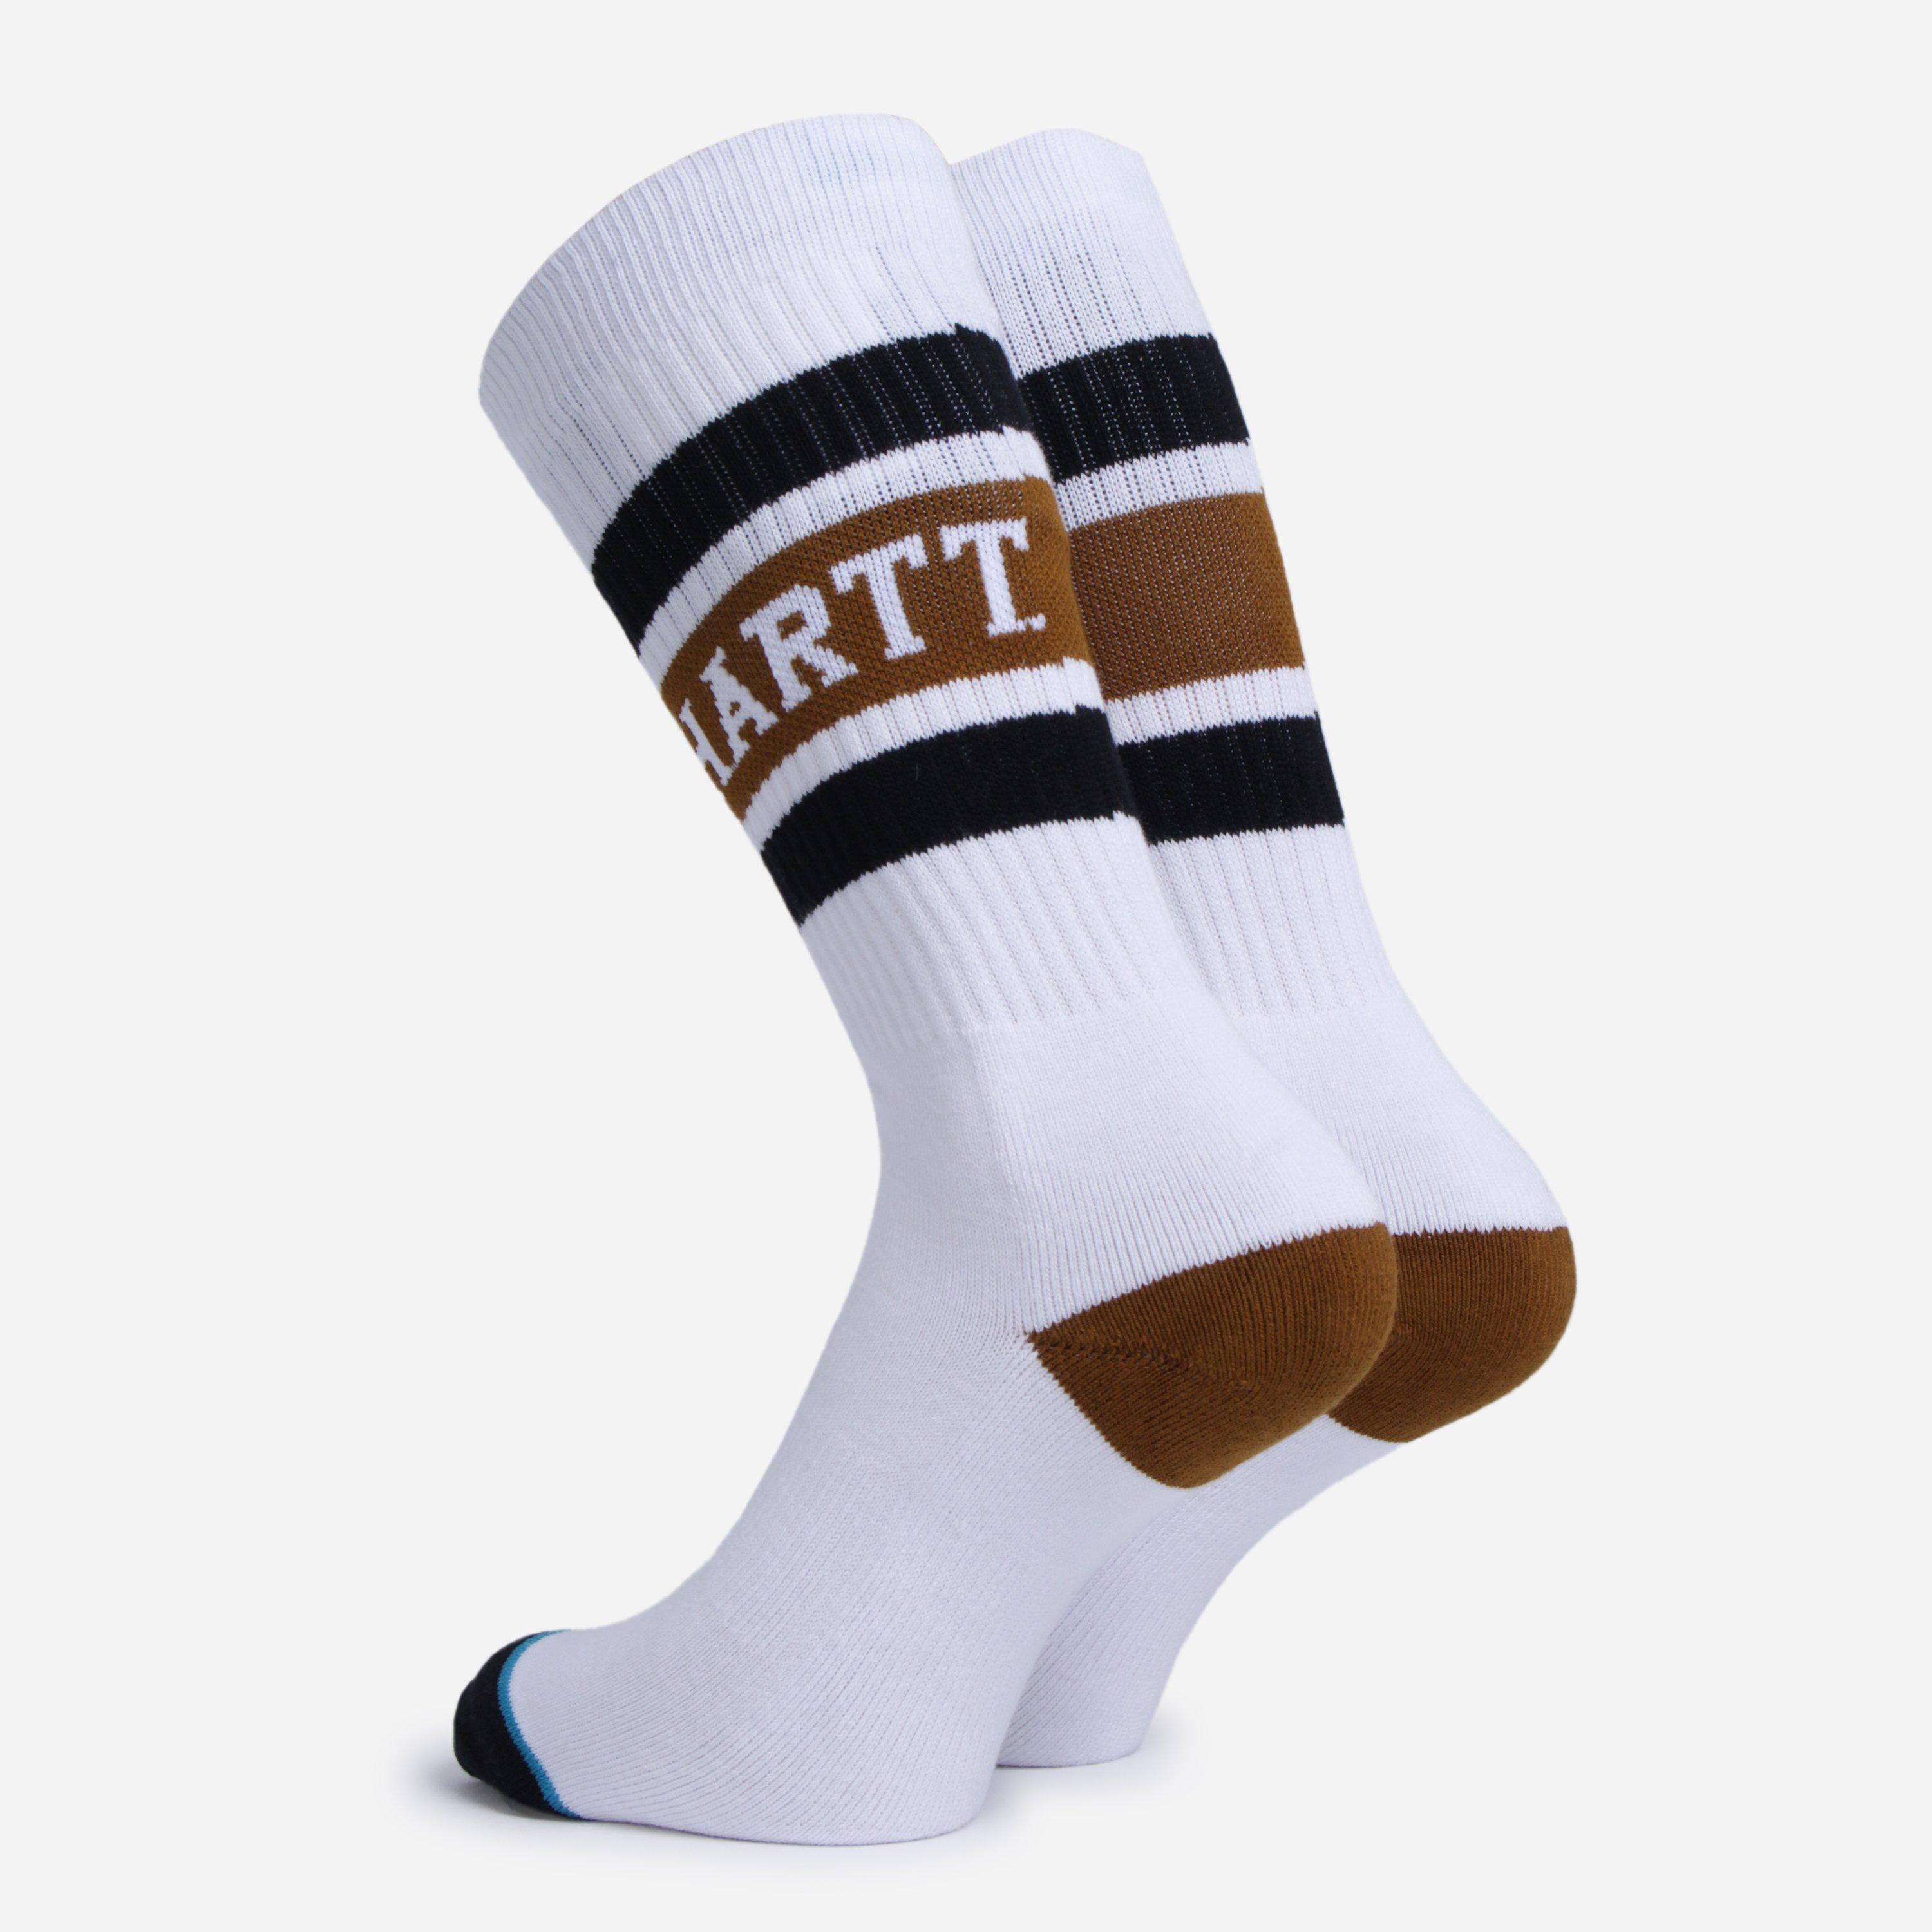 Carhartt WIP X Stance - Strike Socks in White for Men - Lyst